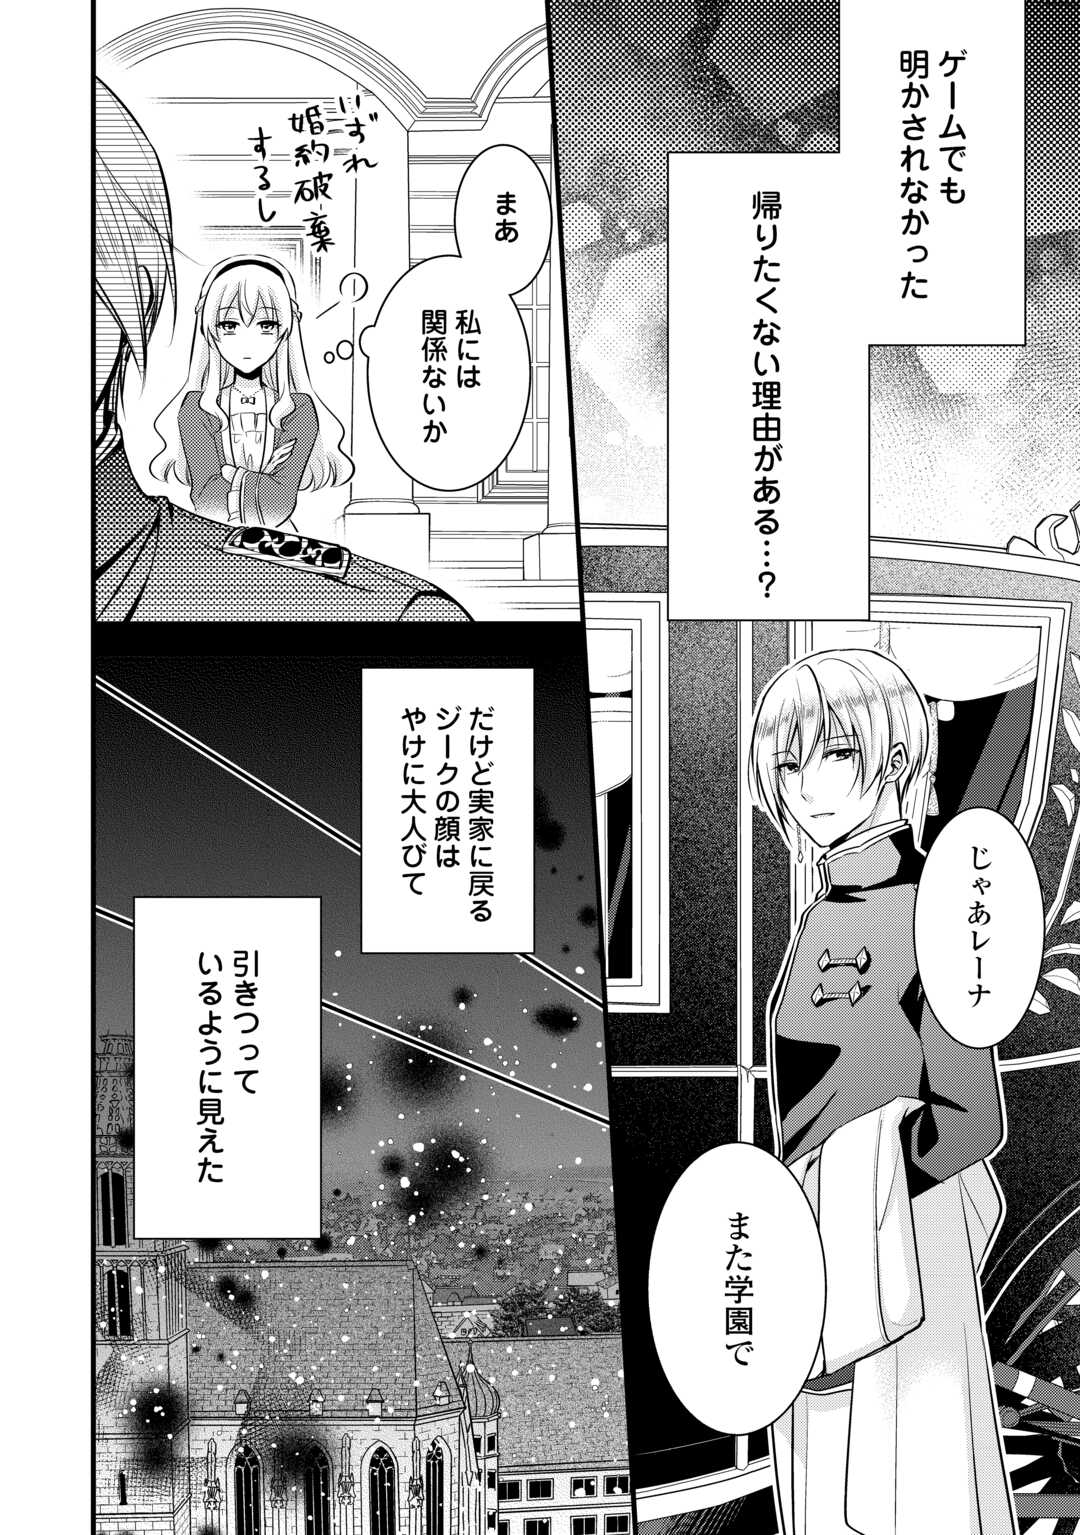 Akuyaku Reijou wa Heroine wo Ijimeteiru Baai de wa Nai - Chapter 20 - Page 16